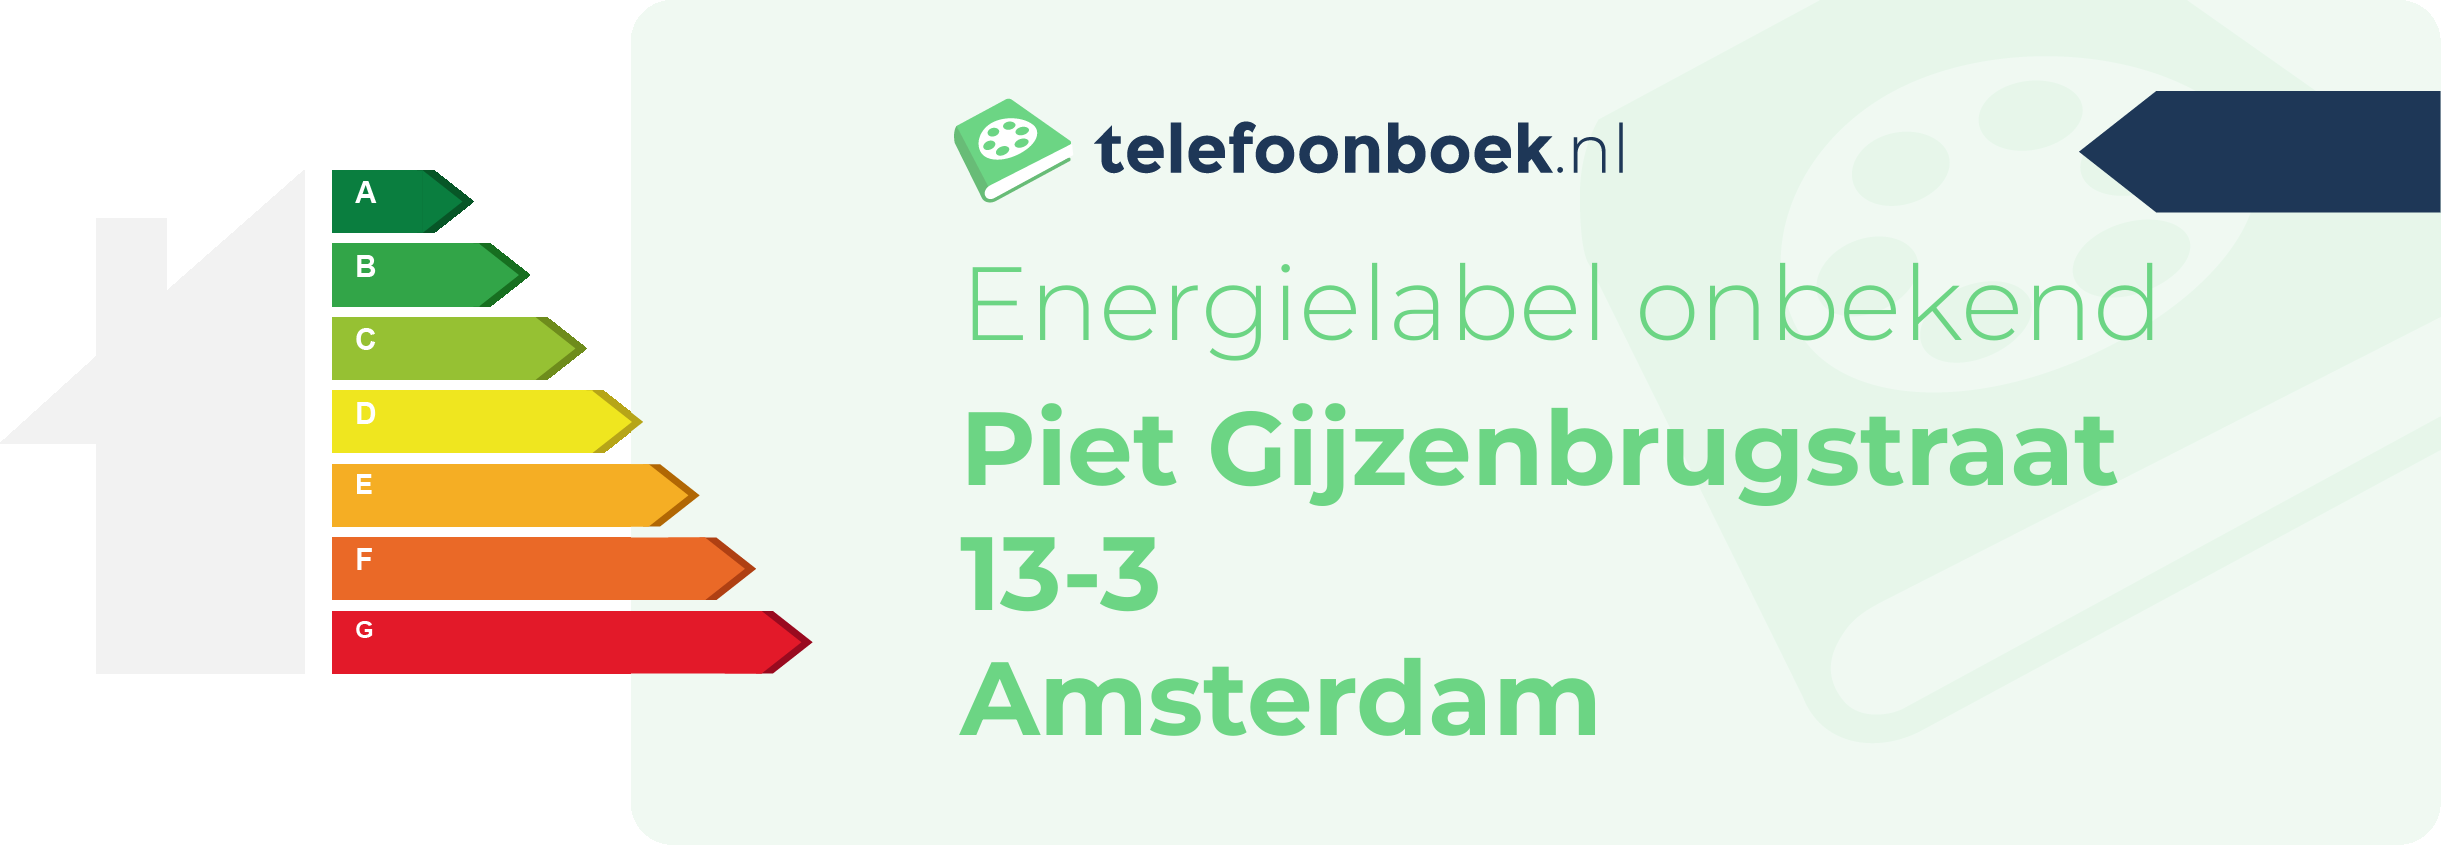 Energielabel Piet Gijzenbrugstraat 13-3 Amsterdam